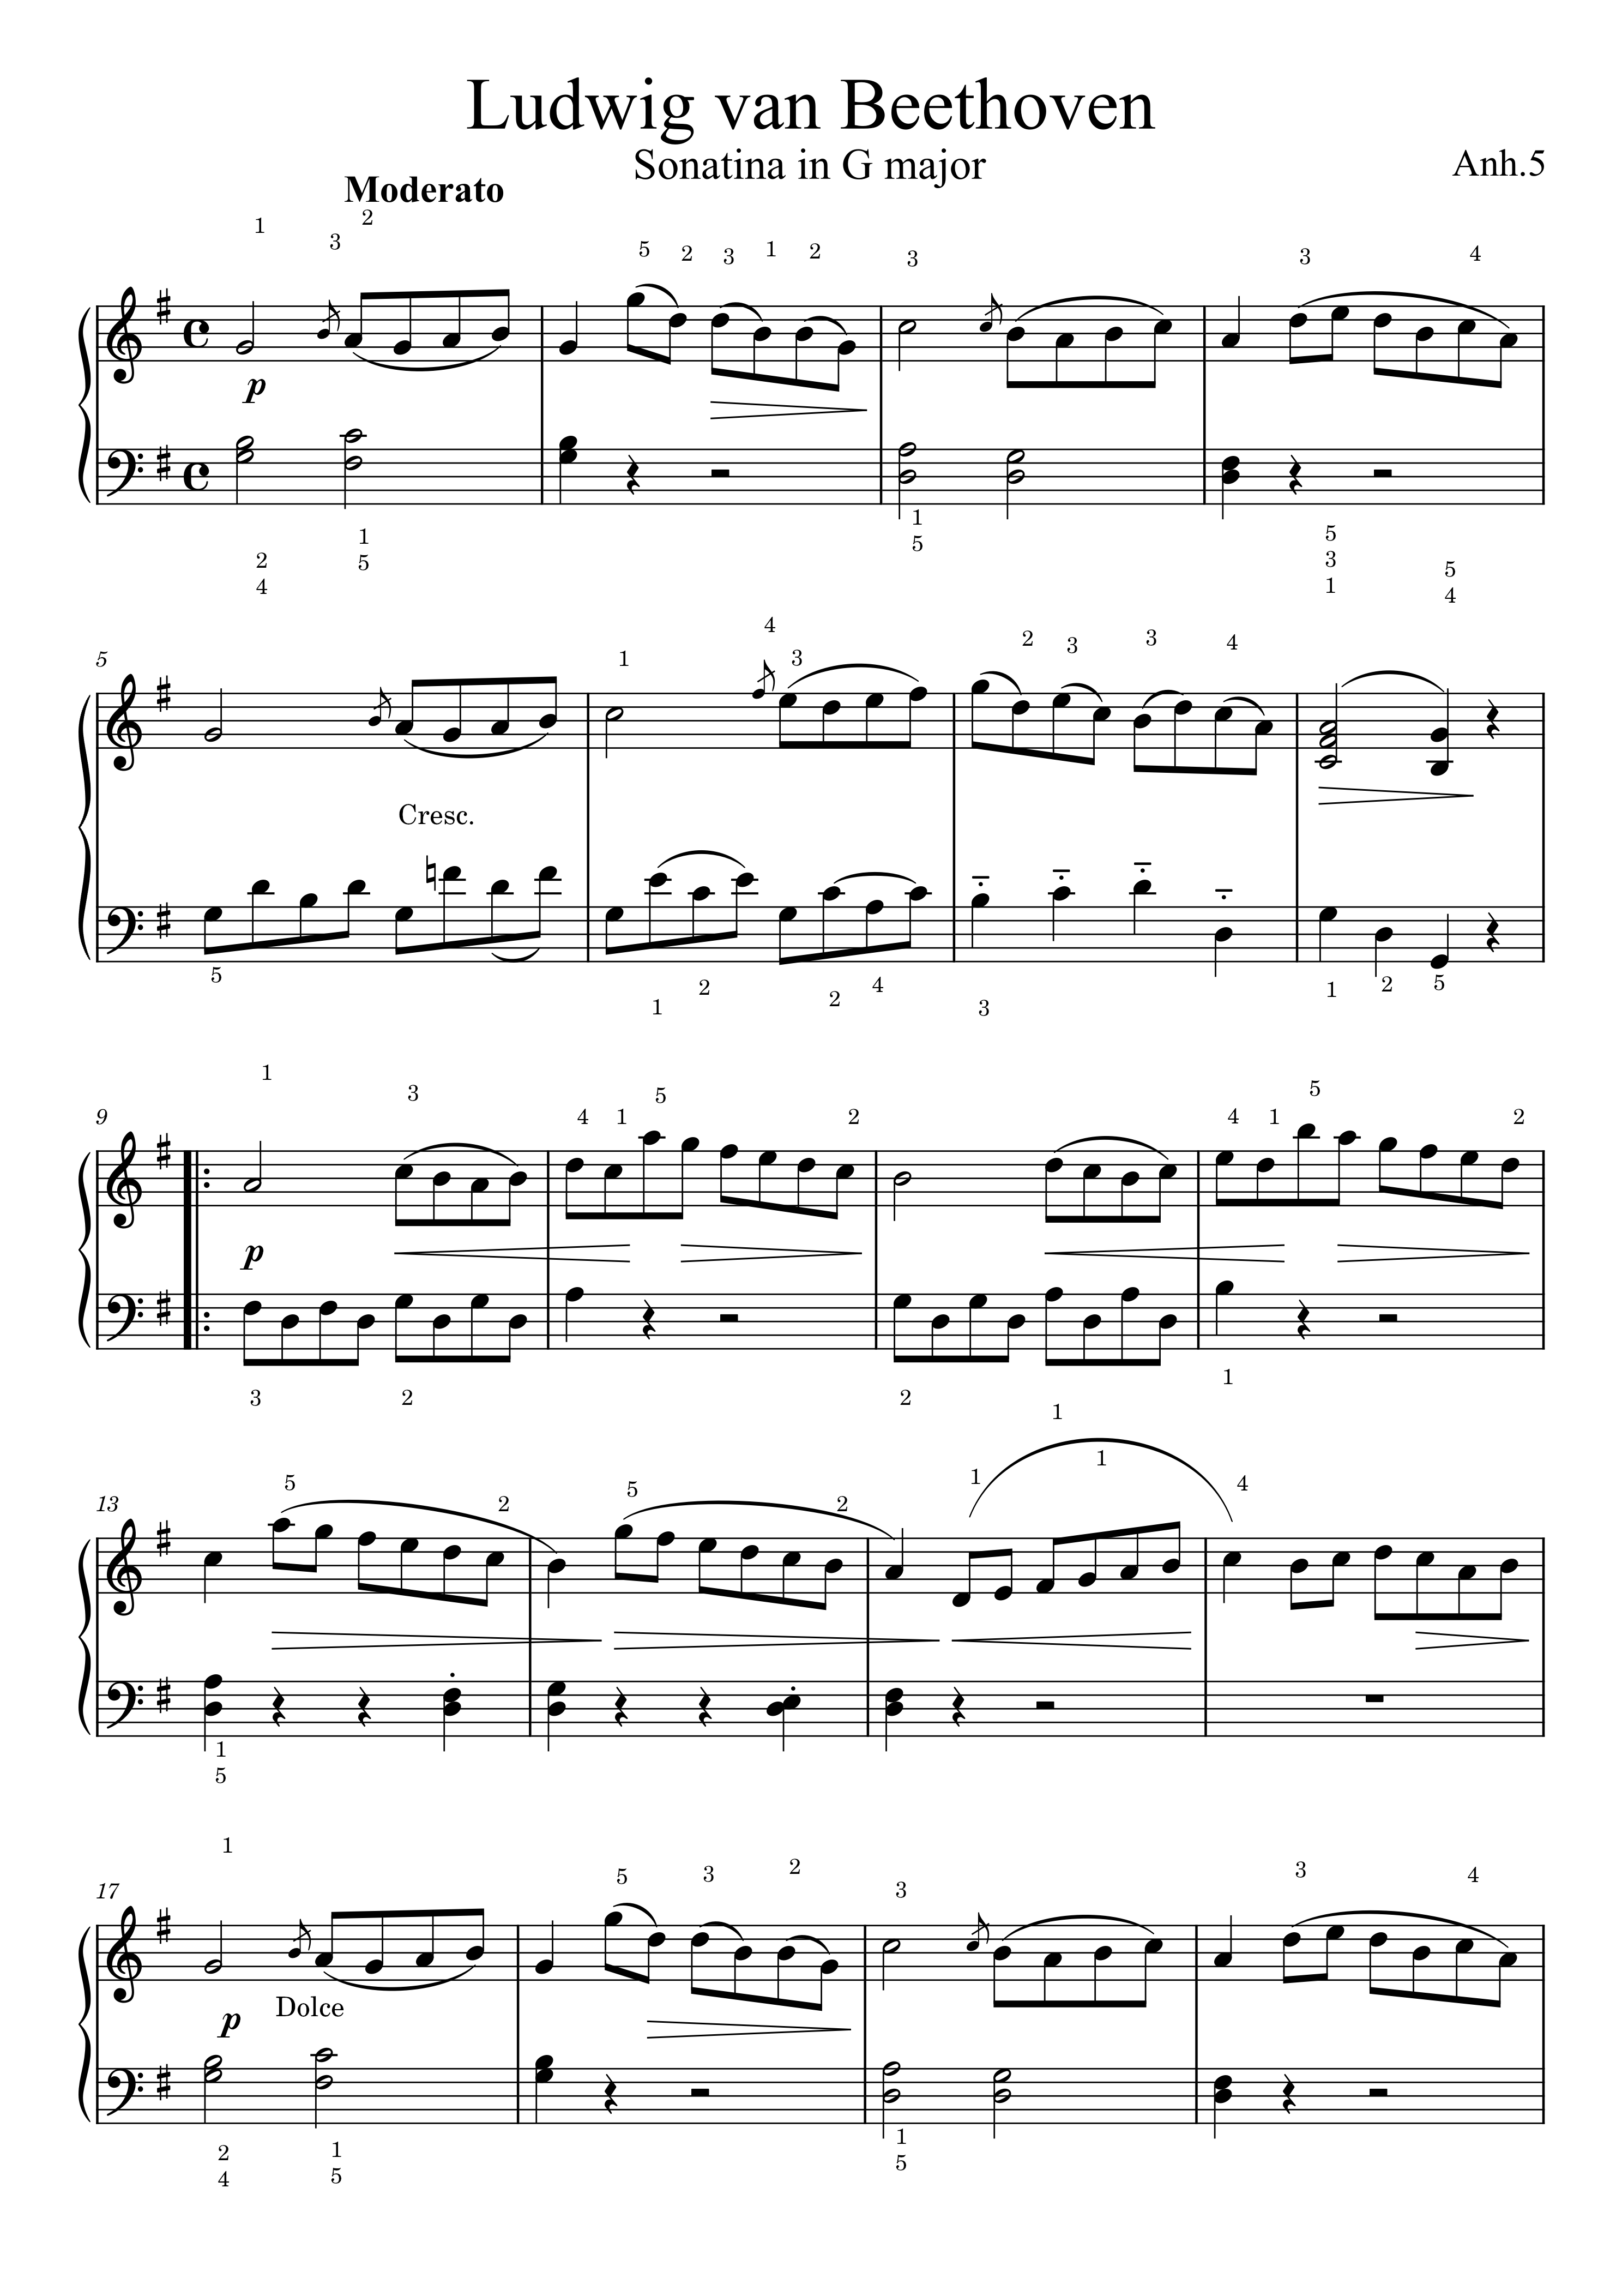 贝多芬g大调小奏鸣曲钢琴谱